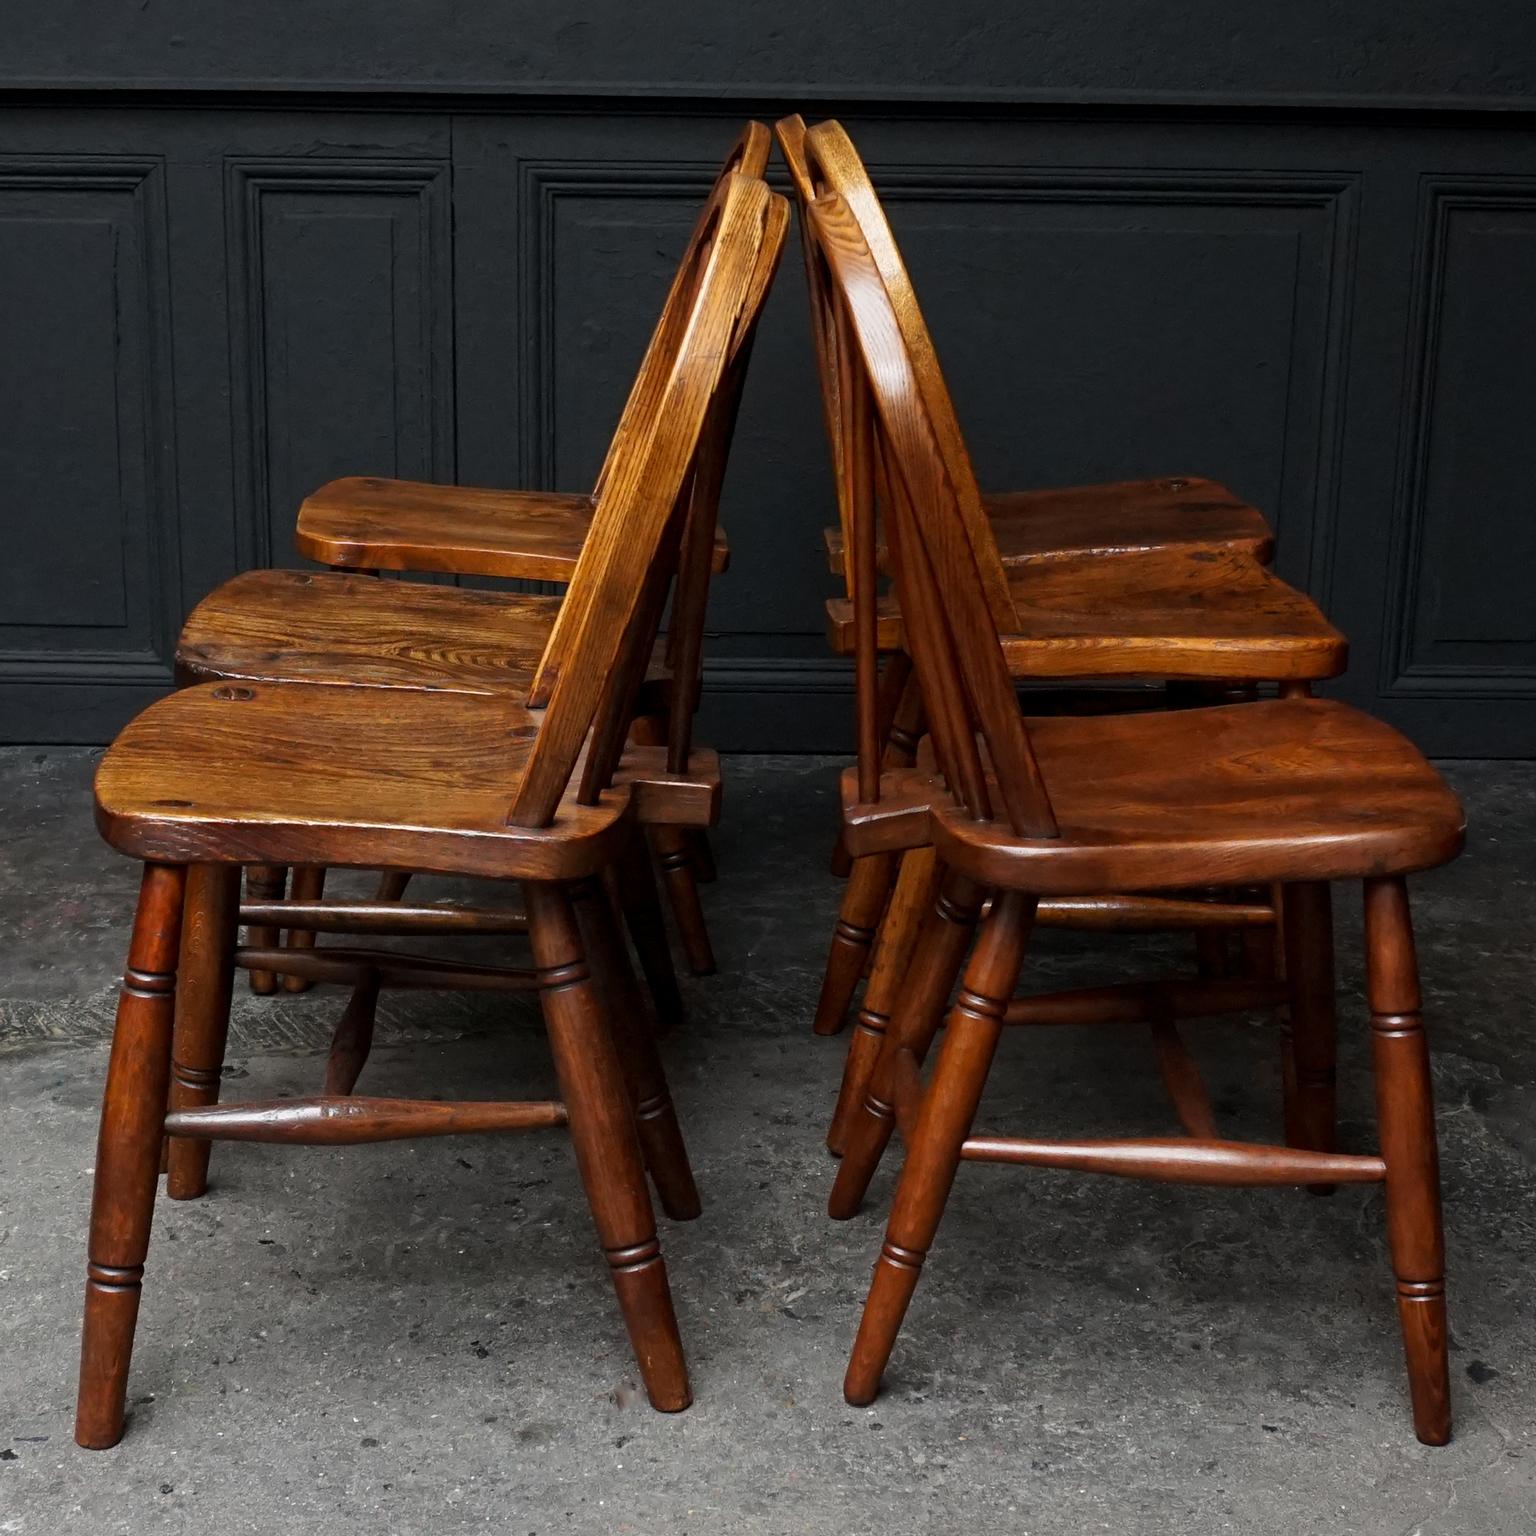 Prächtiger Satz von 6 Windsor Ulmenholz 'Hoop Back' Stühlen aus dem 19. Jahrhundert-England ohne Armlehnen.
Sehr schönes Set, das sich durch seine gute, robuste und handgefertigte Qualität auszeichnet. 
Einige der Stühle sind unter der Sitzfläche